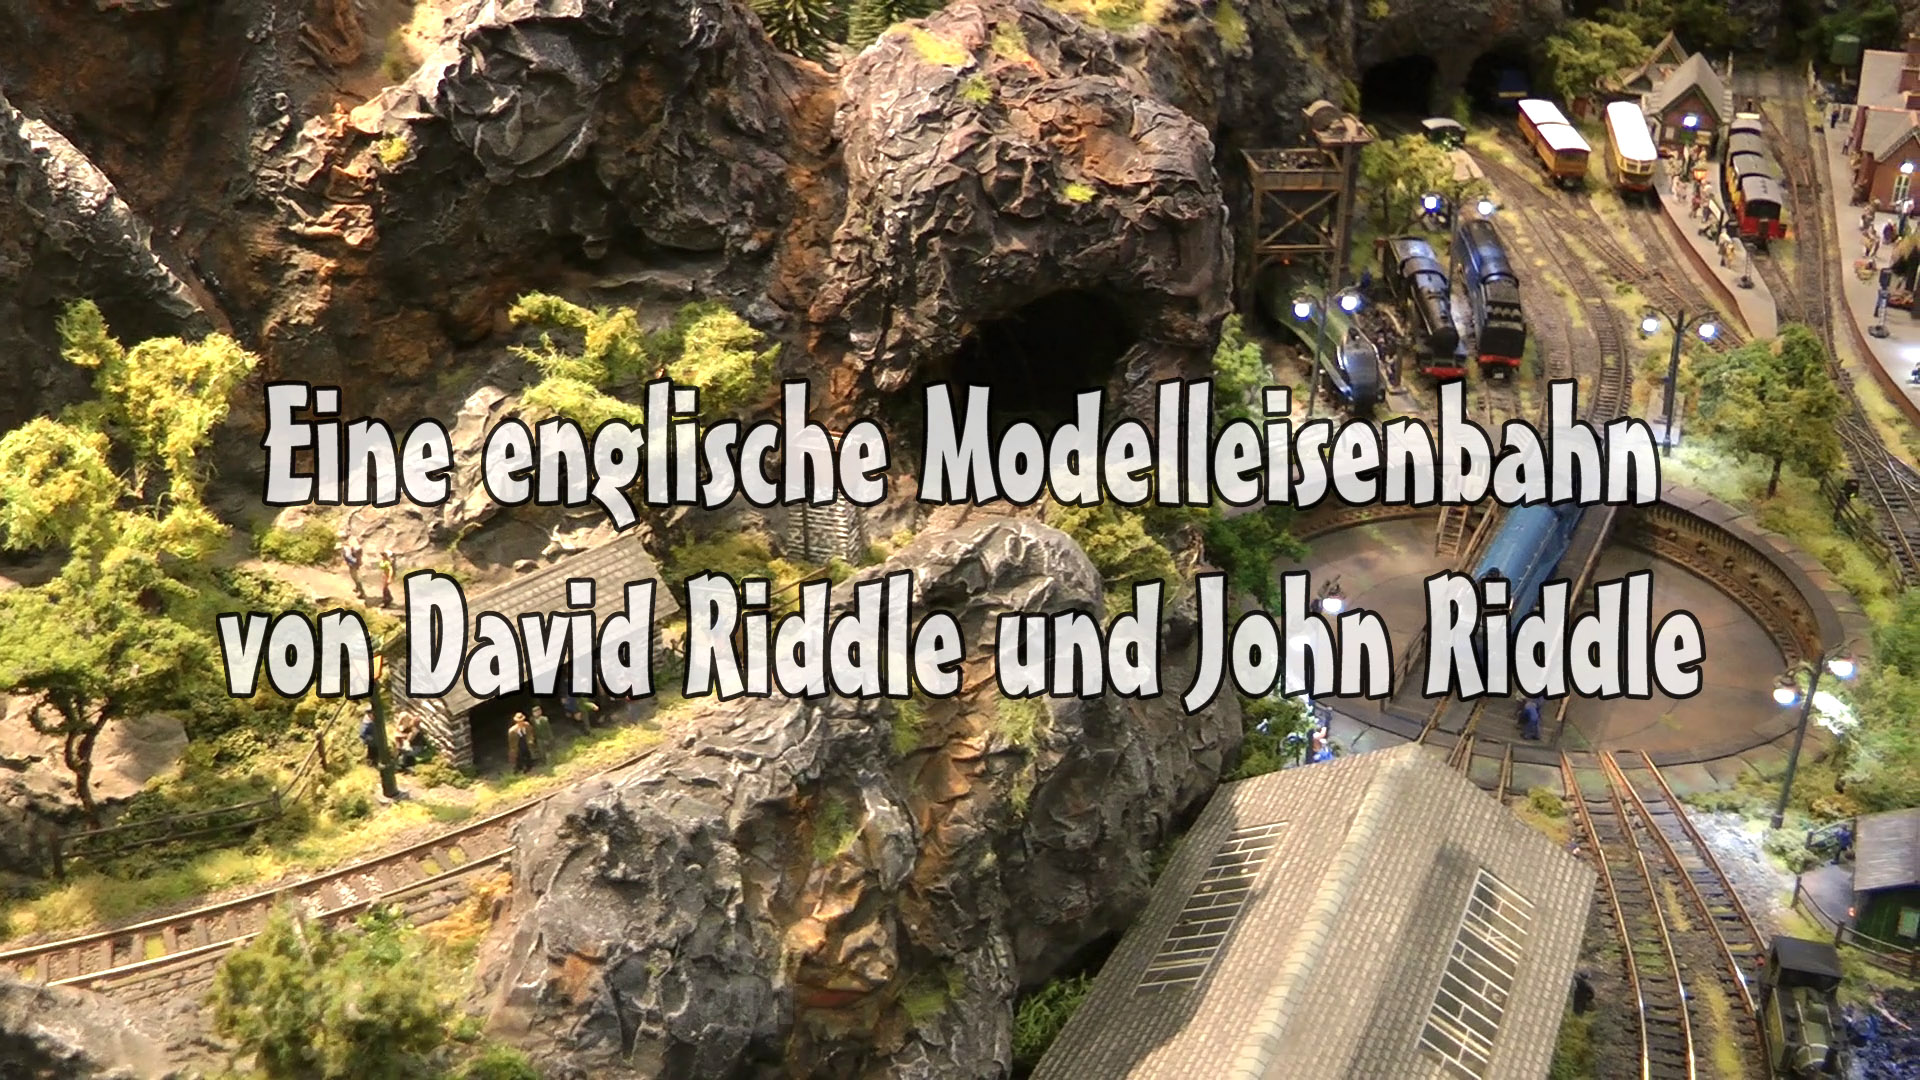 Modellbahn Spur N mit englischen Zügen und Dampfloks: Modelleisenbahn von David und John Riddle